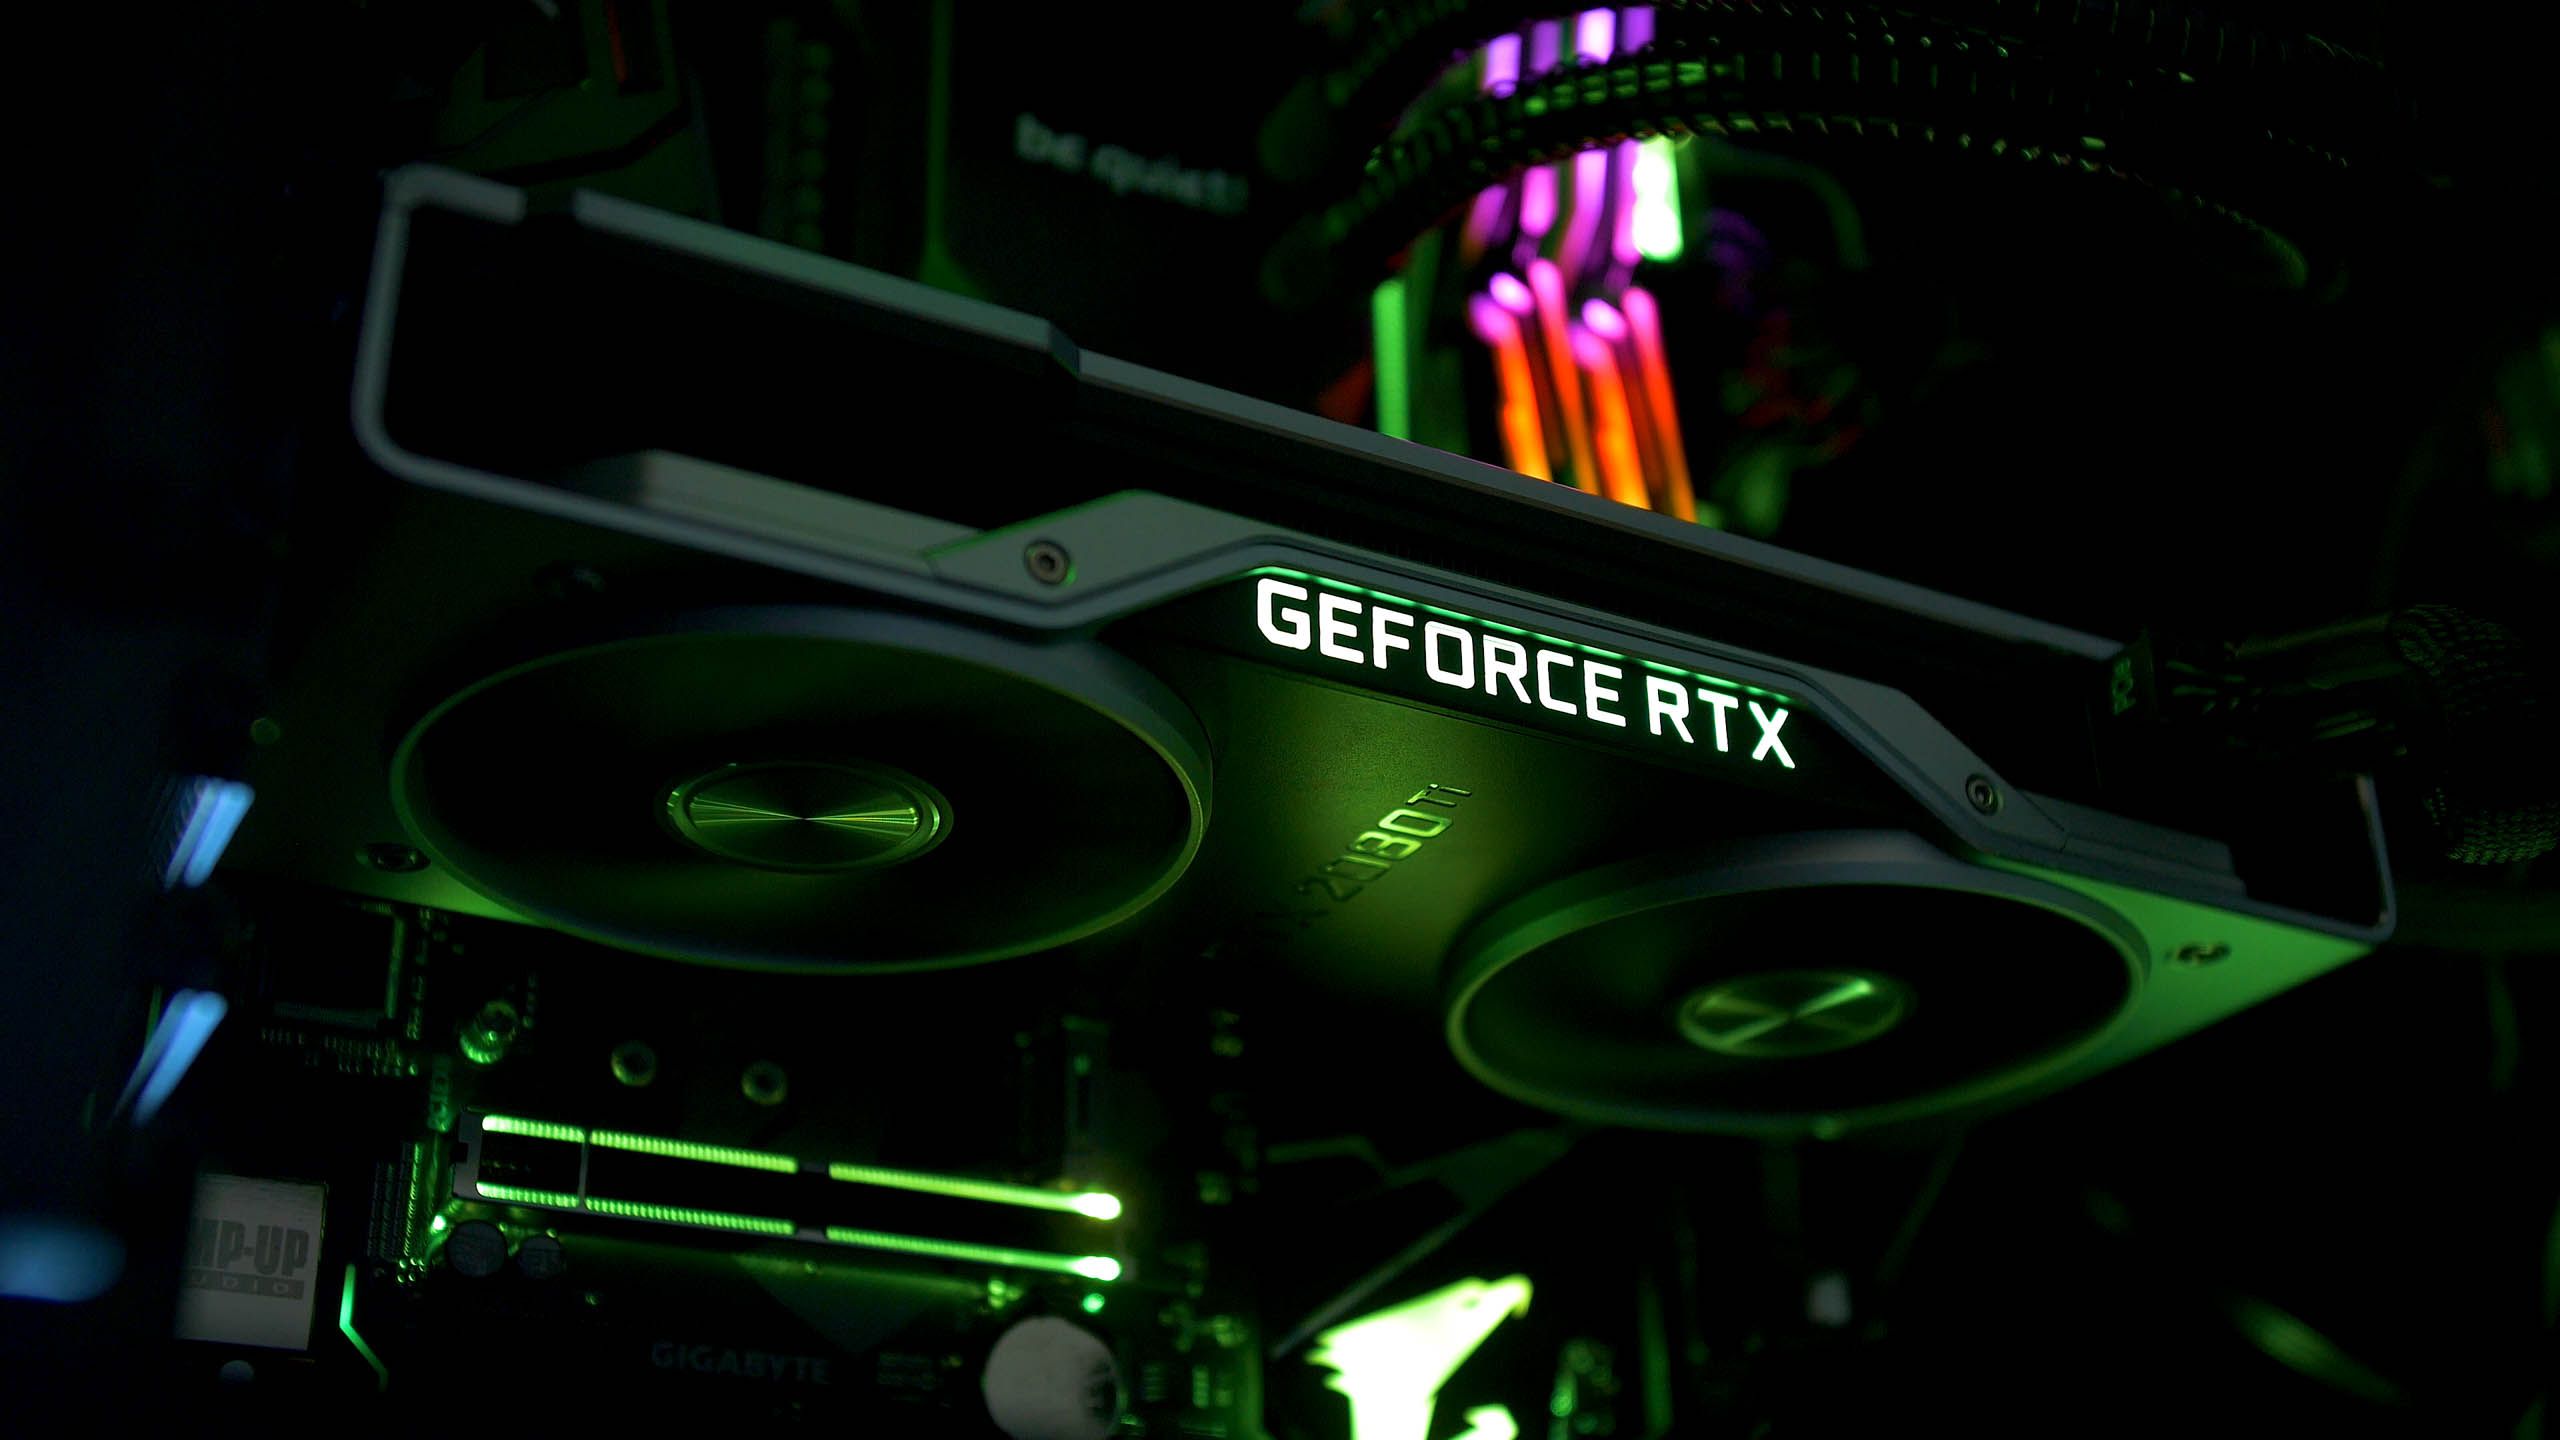 GeForce RTX 2070 Wallpaper Free GeForce RTX 2070 Background